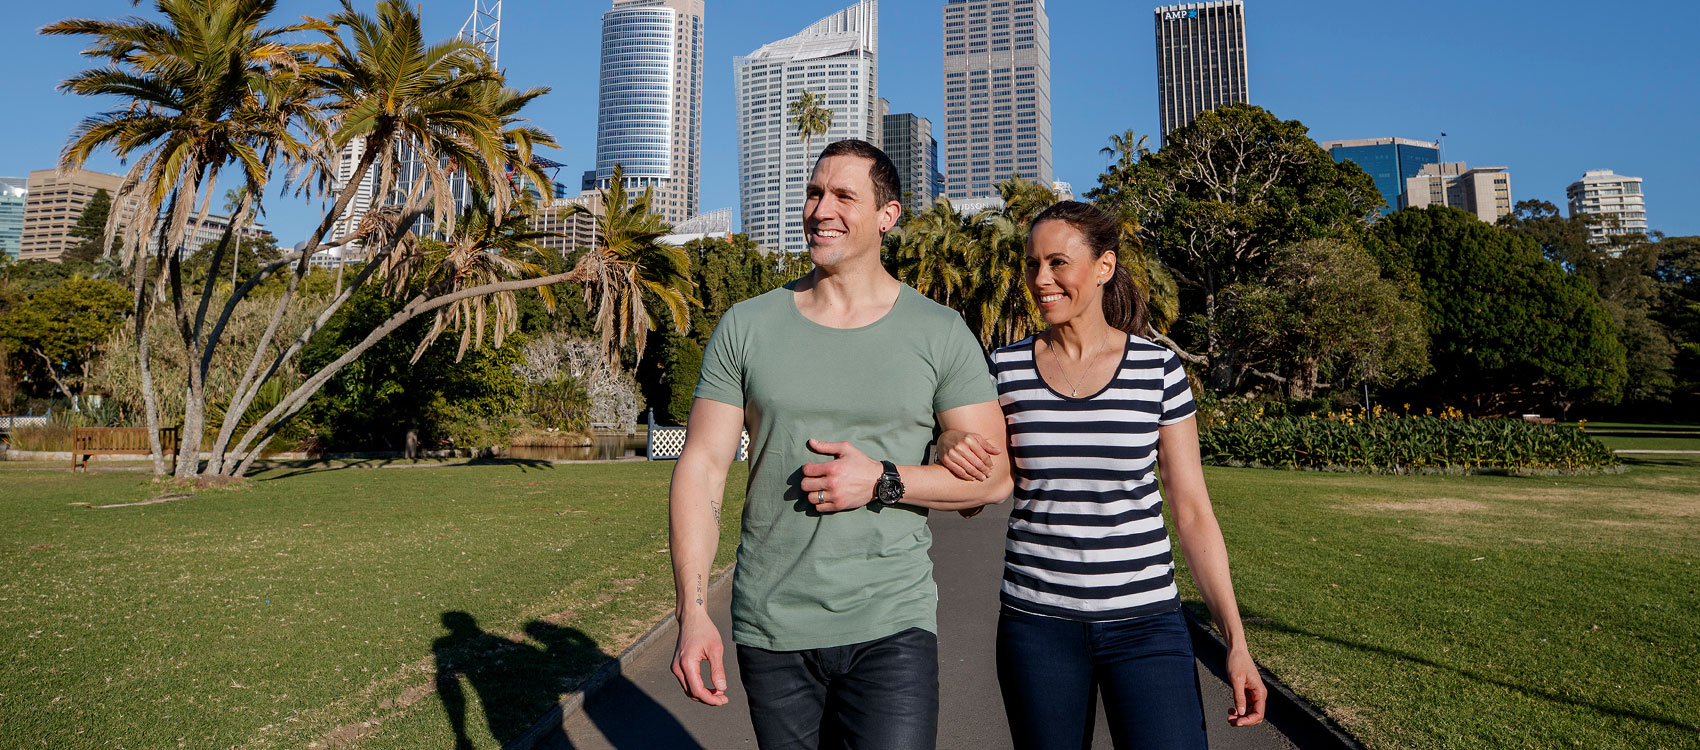 Two people walking through The Royal Botanic Garden Sydney